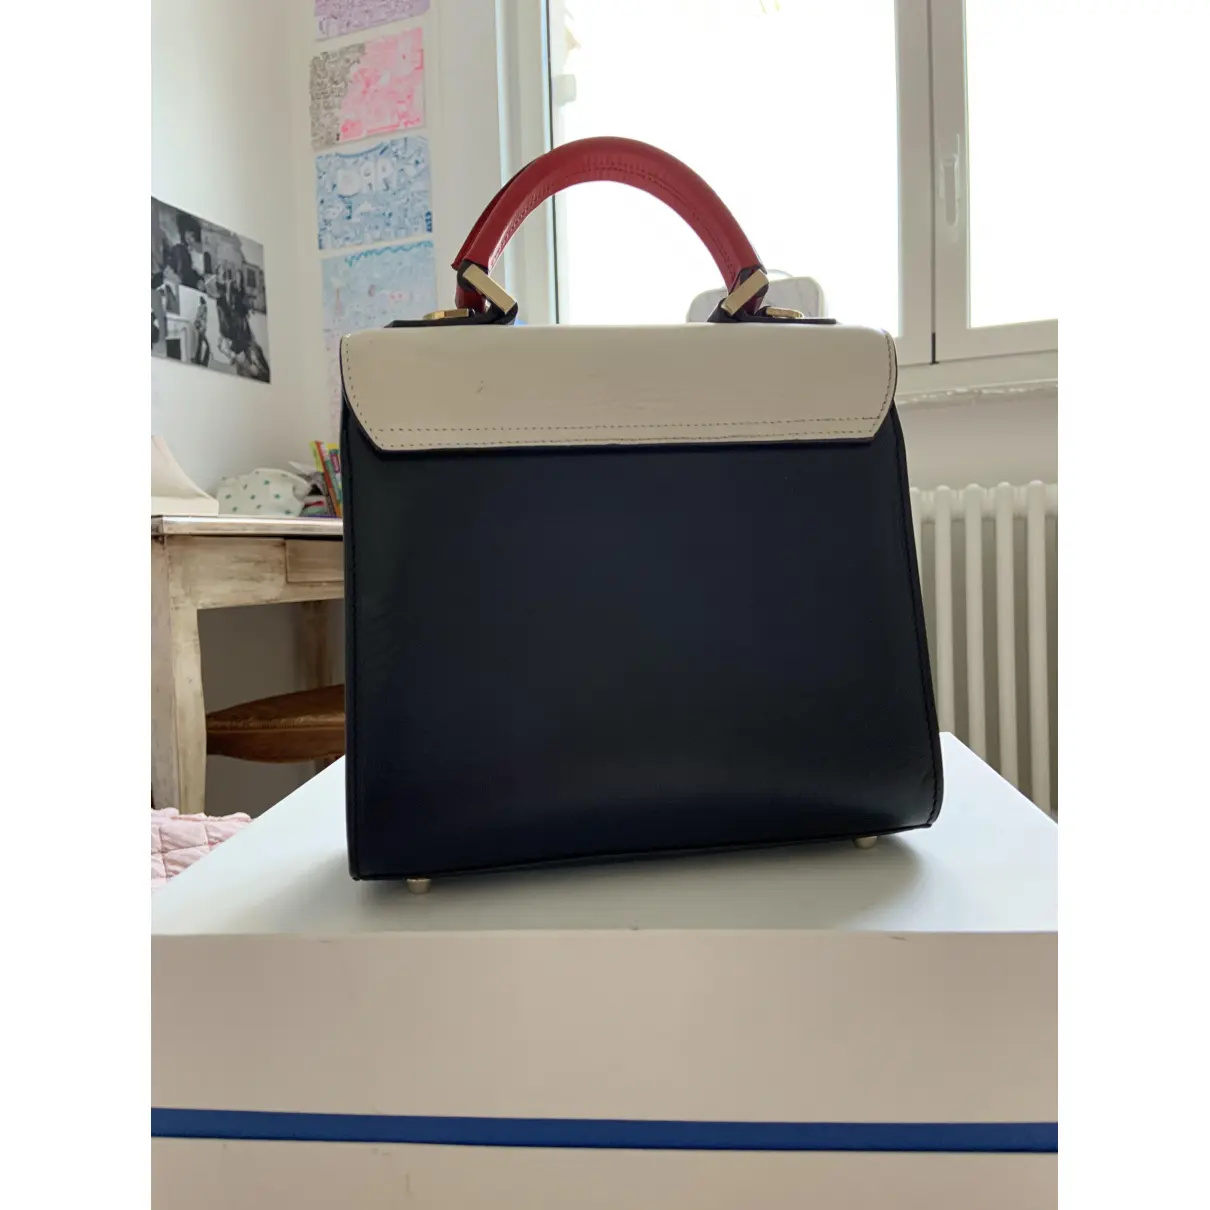 Buy Les Petits Joueurs Leather handbag online